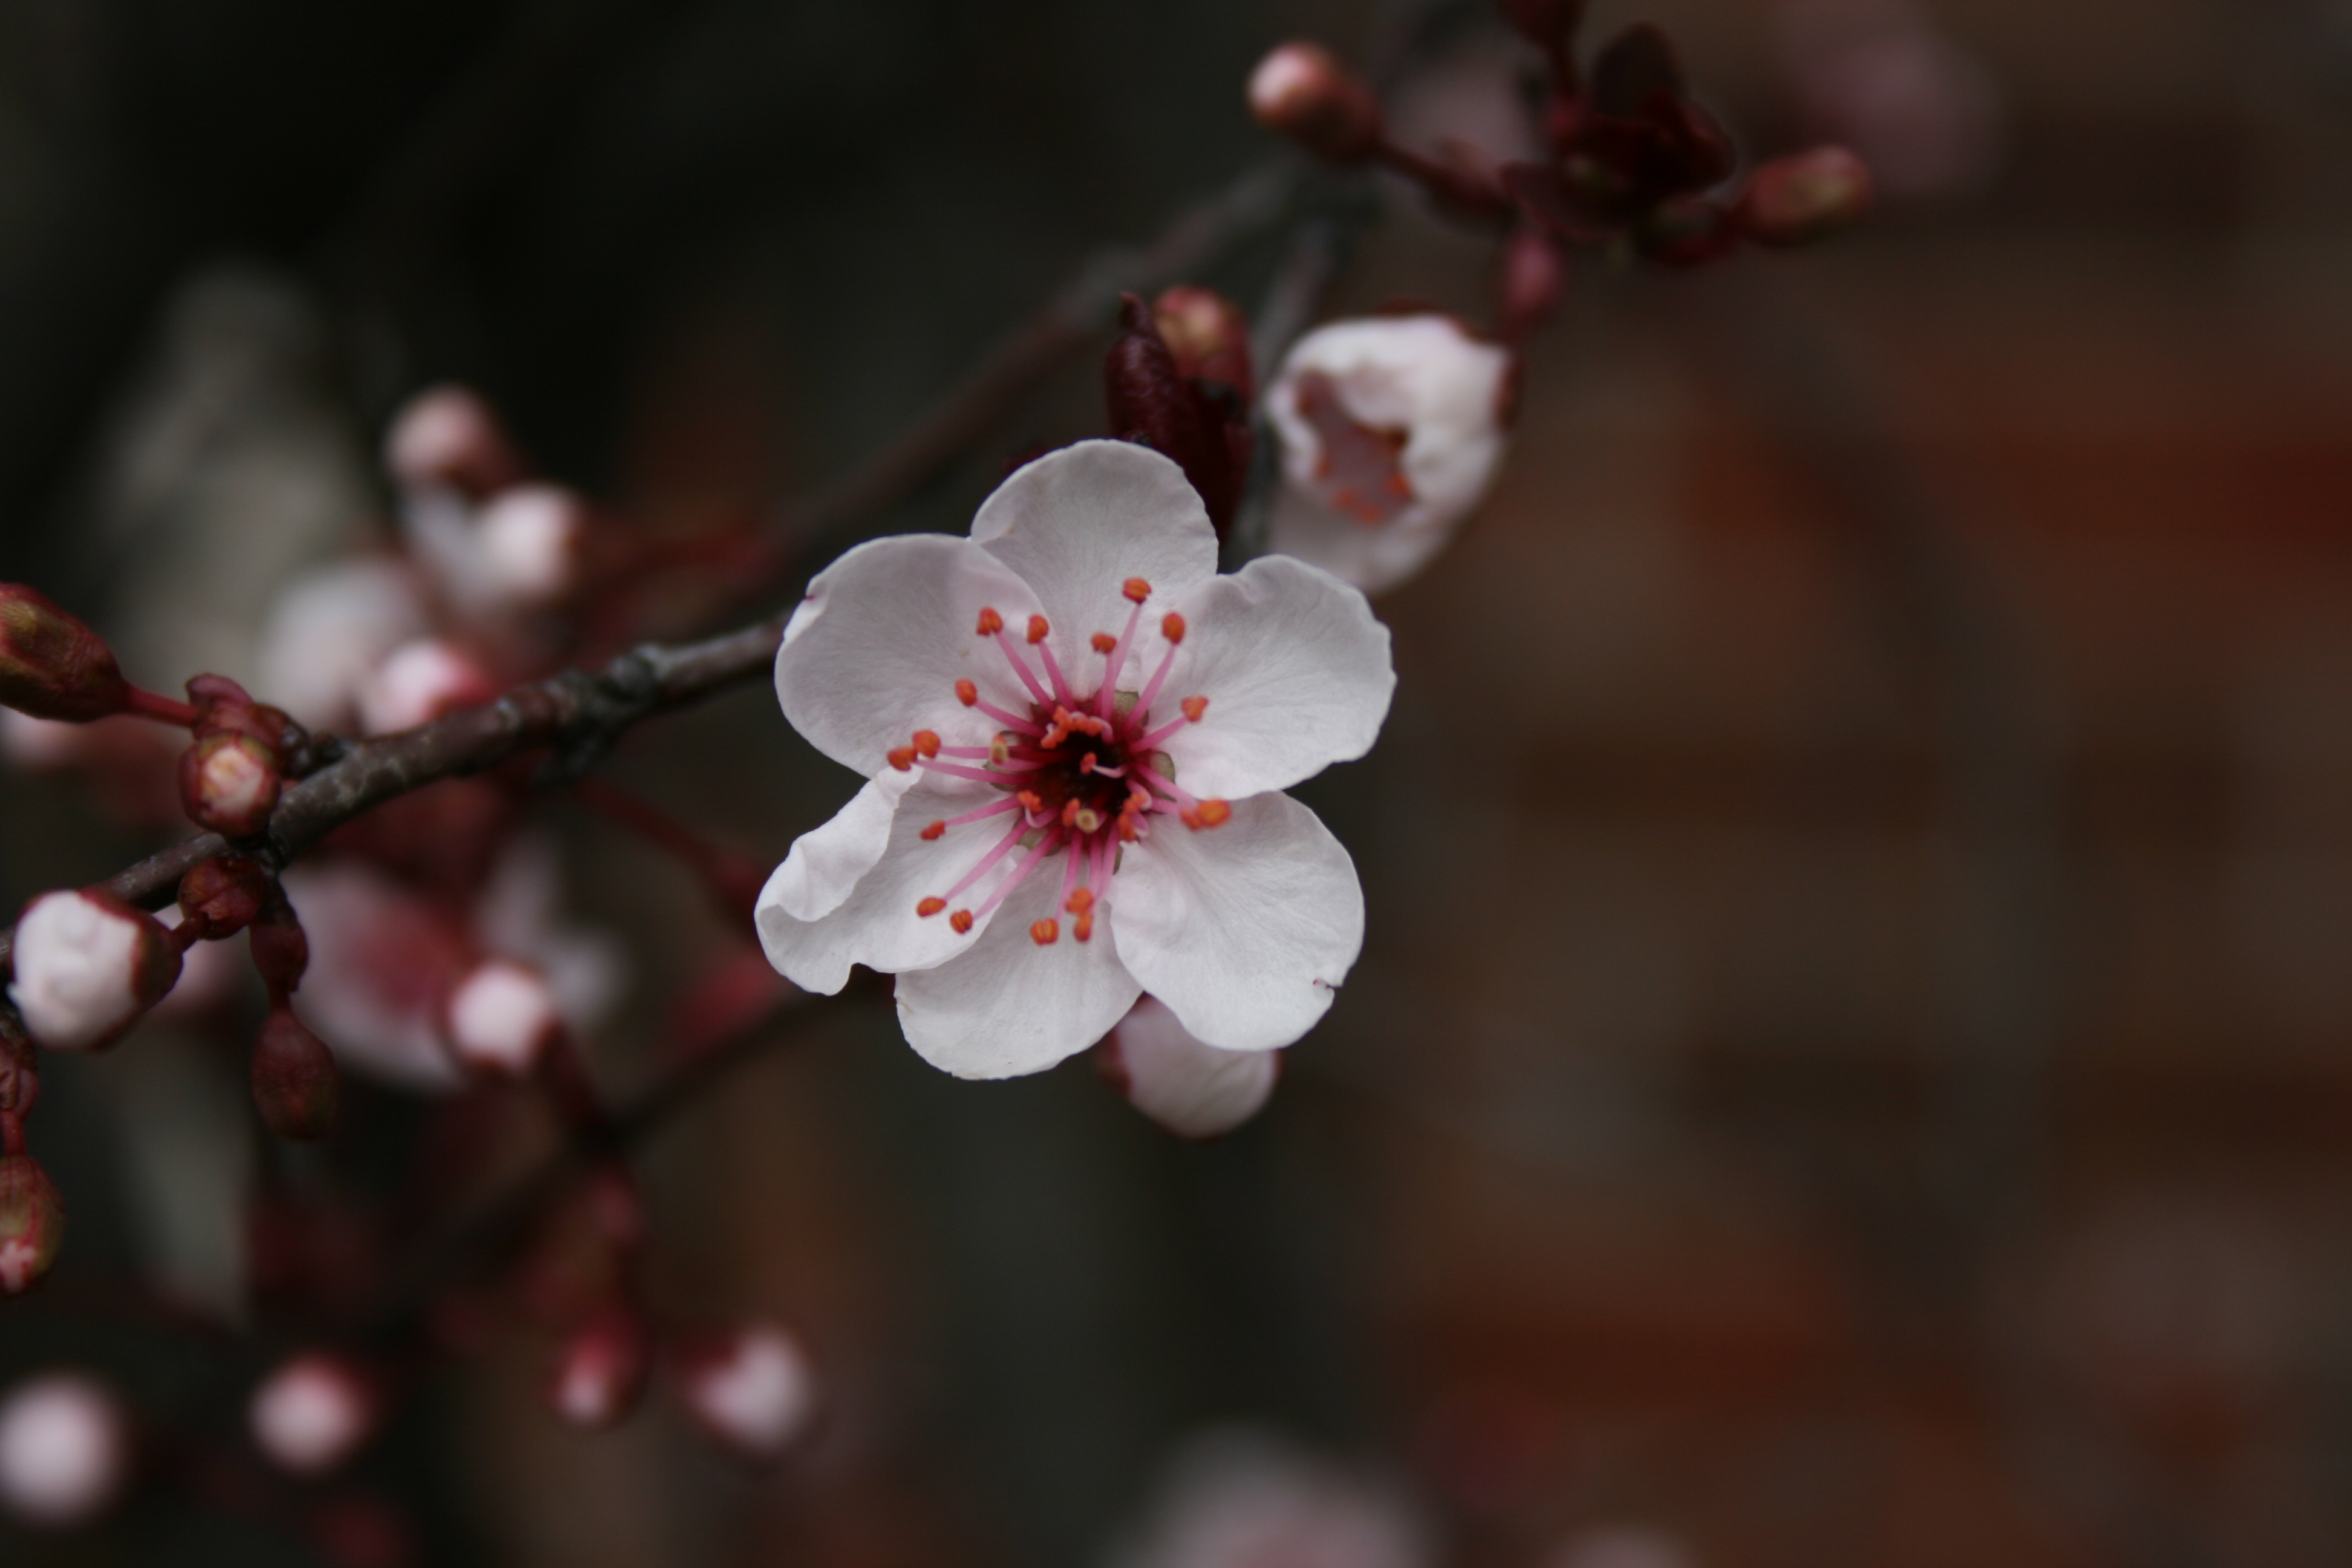 Single Blossom by LadyAerlinn on DeviantArt